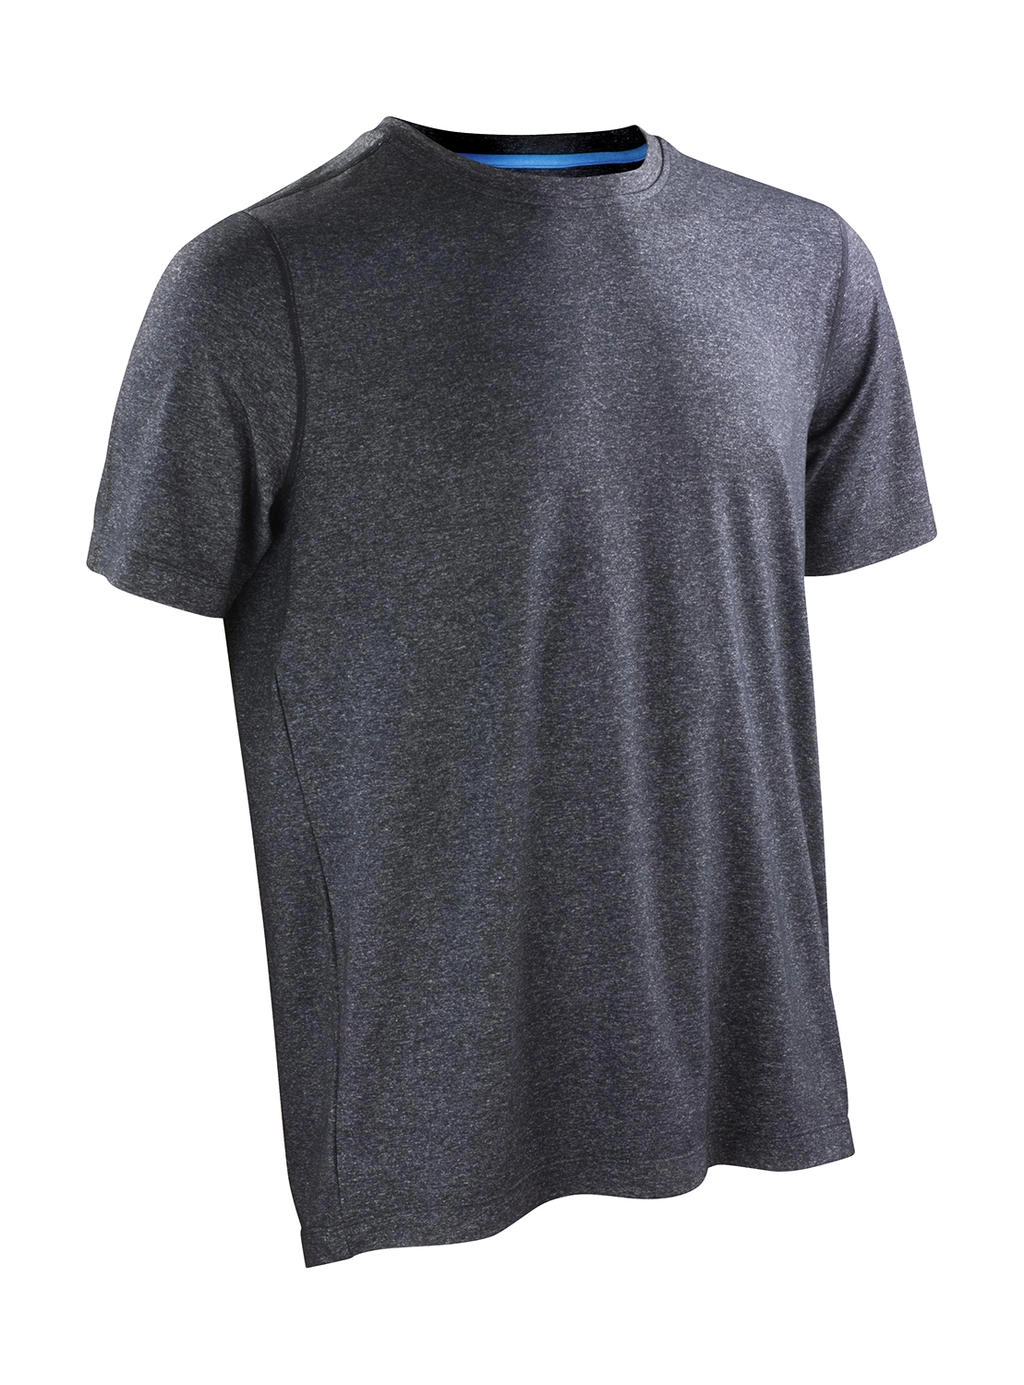 Fitness Men`s Shiny Marl T-Shirt zum Besticken und Bedrucken in der Farbe Phantom Grey/Ocean Blue mit Ihren Logo, Schriftzug oder Motiv.